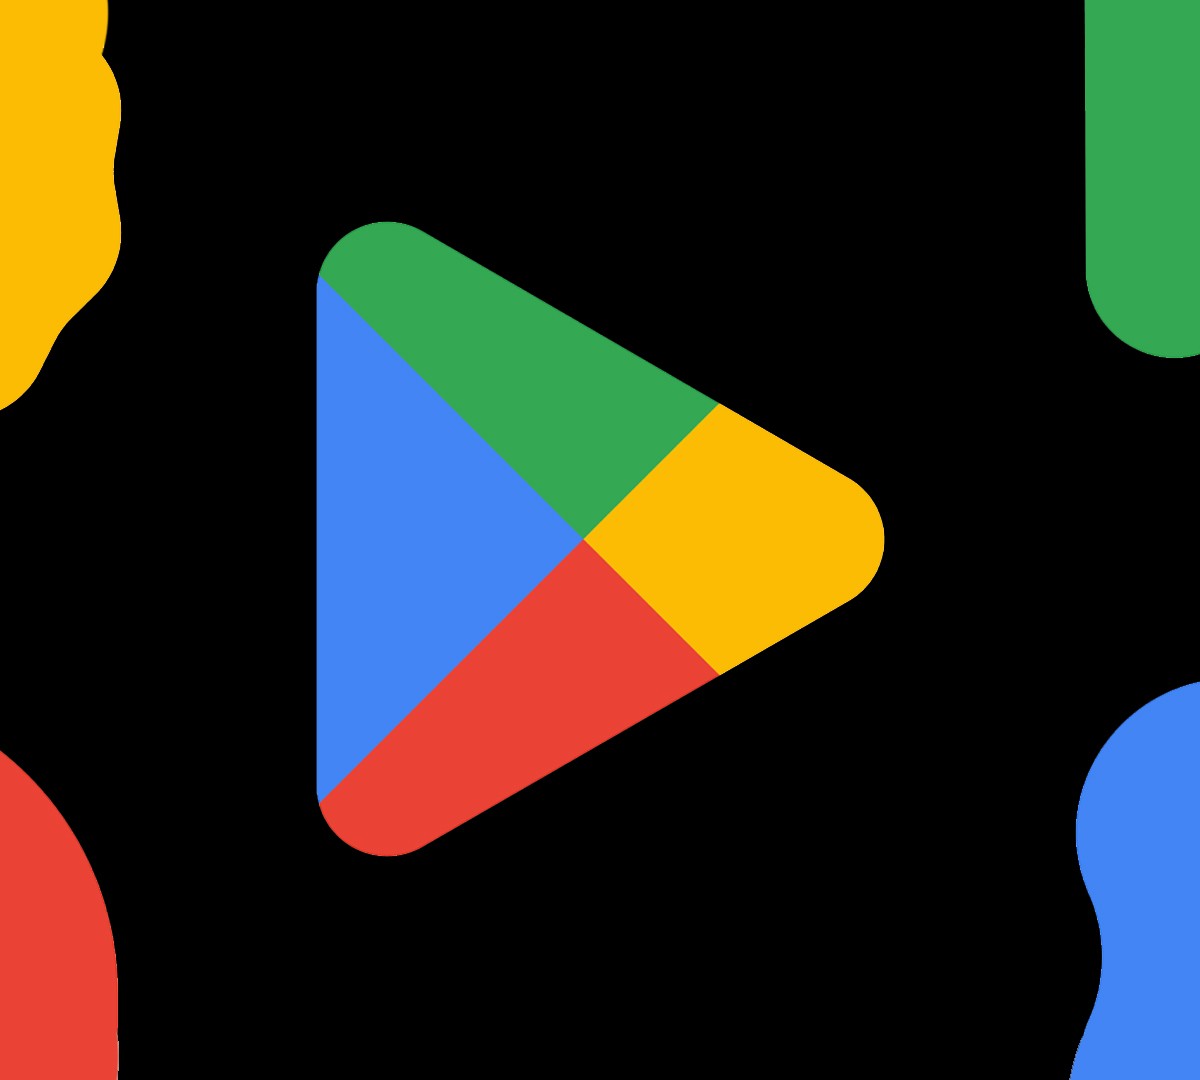 Visão geral dos serviços relacionados a jogos do Google Play